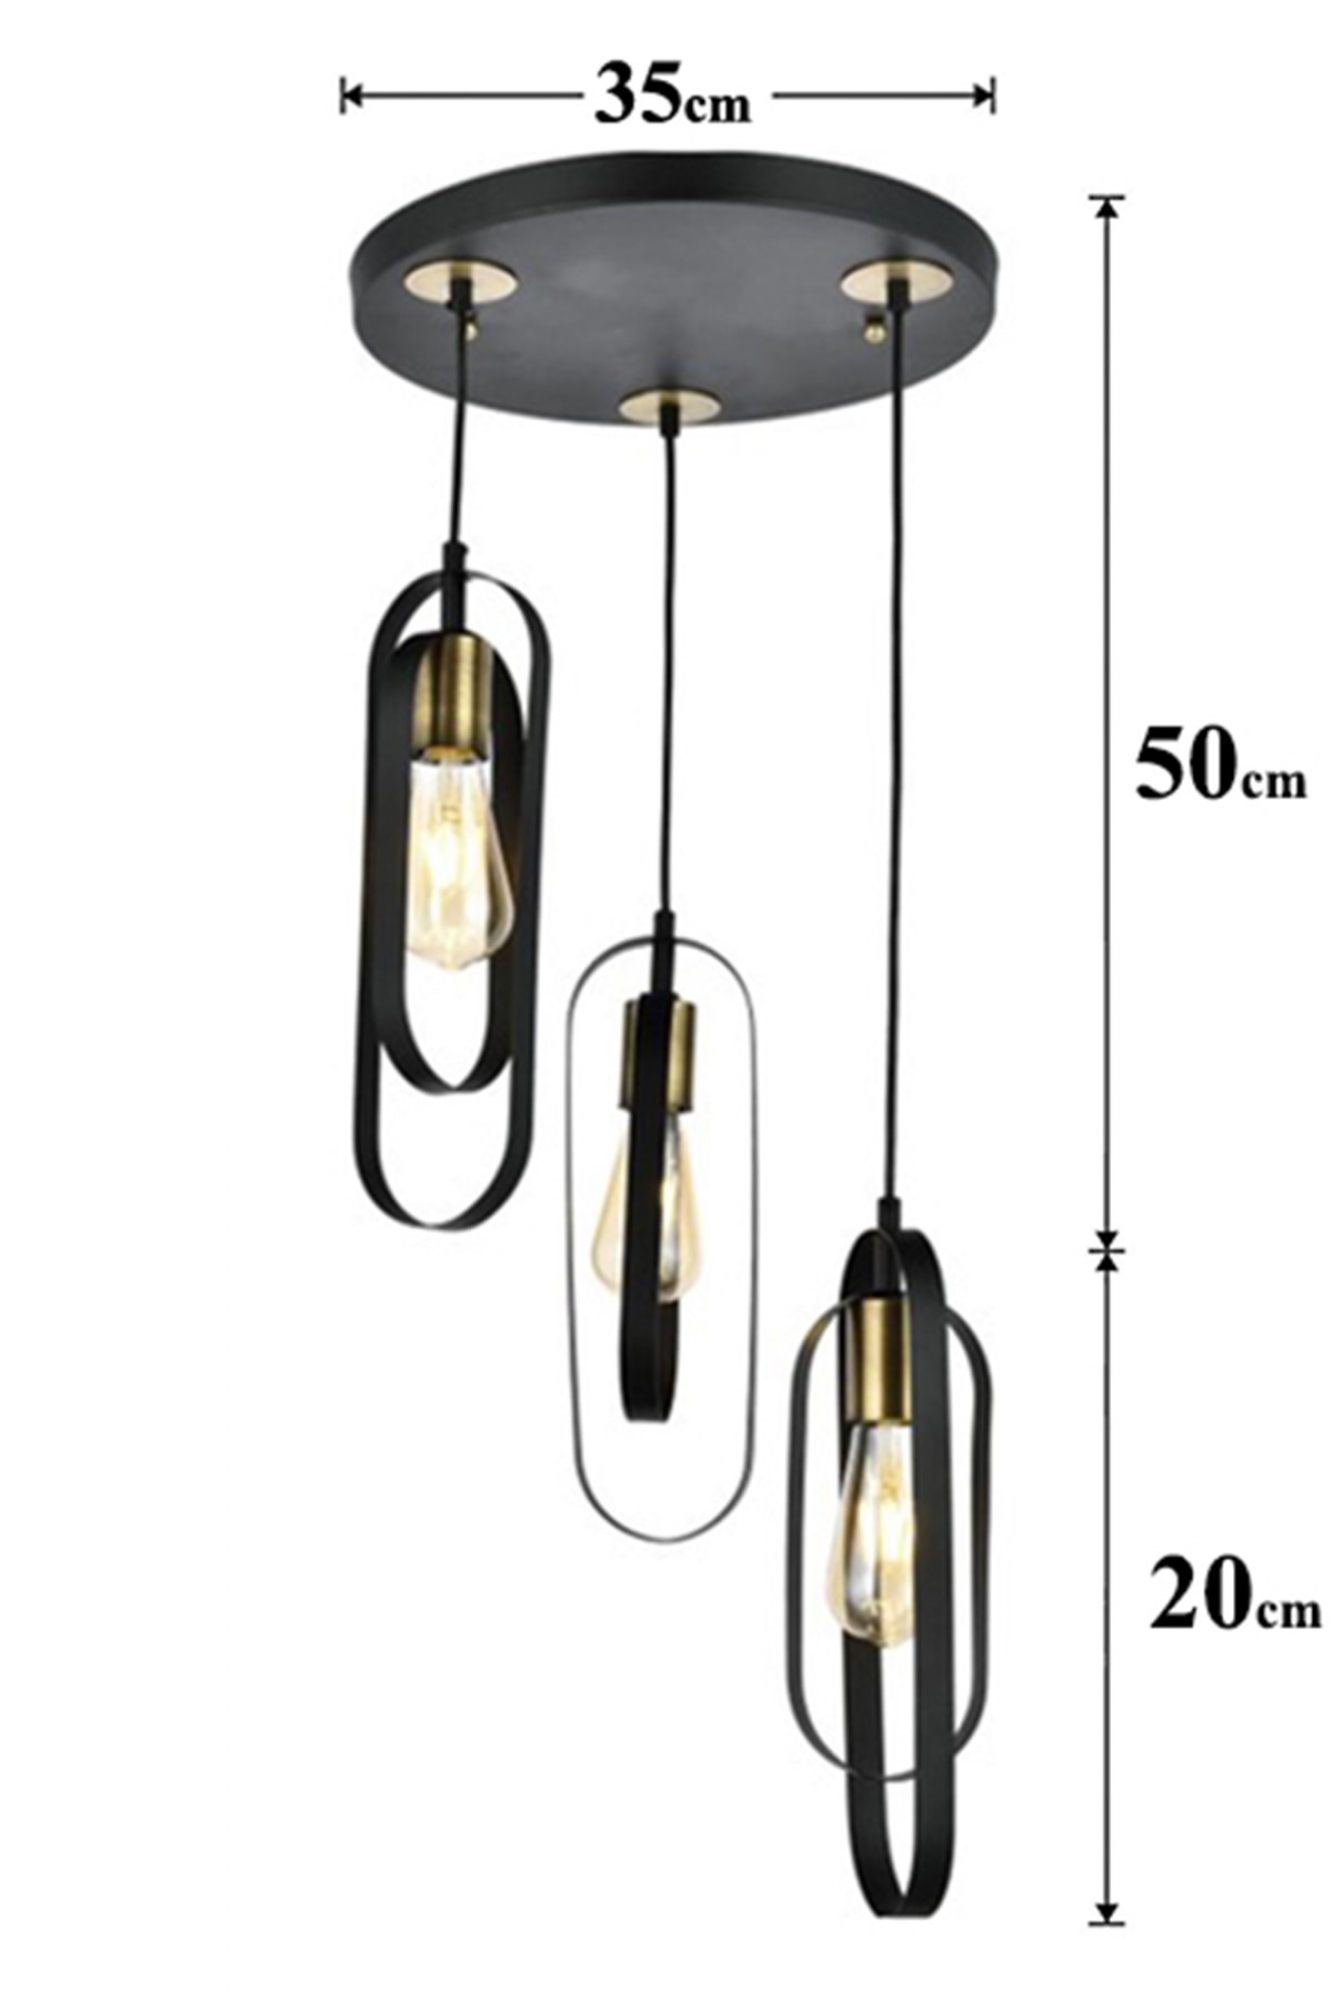 Hanging lamp elegance black